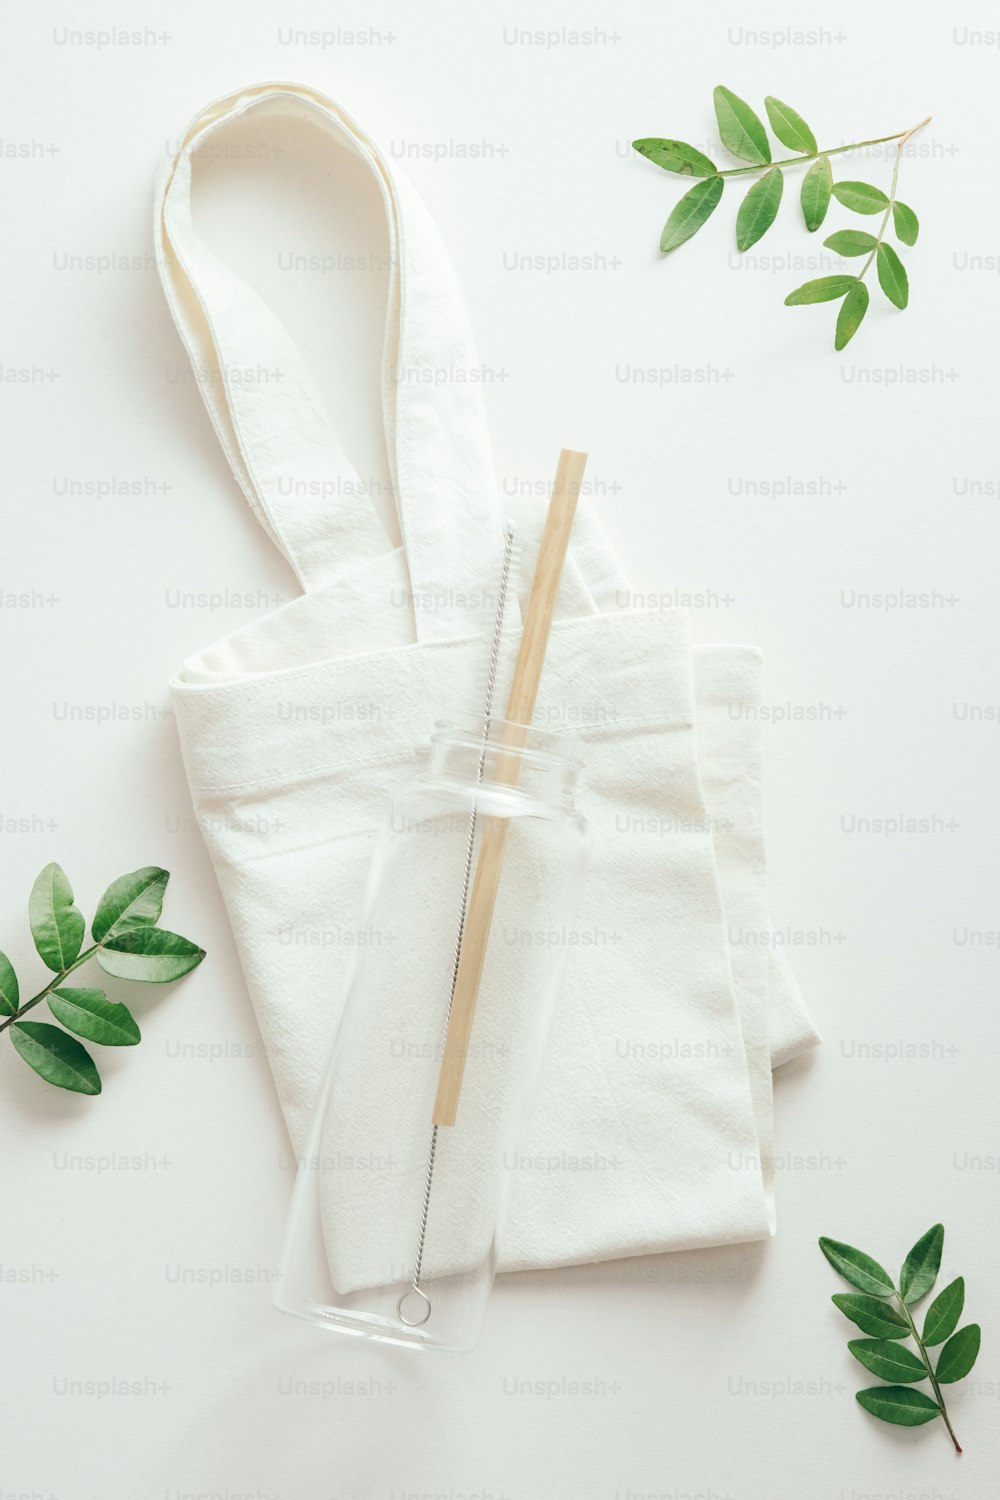 Borraccia in vetro ecologico riutilizzabile con paglia di bambù su shopper di stoffa con foglie verdi. Concetto di stile di vita sostenibile.